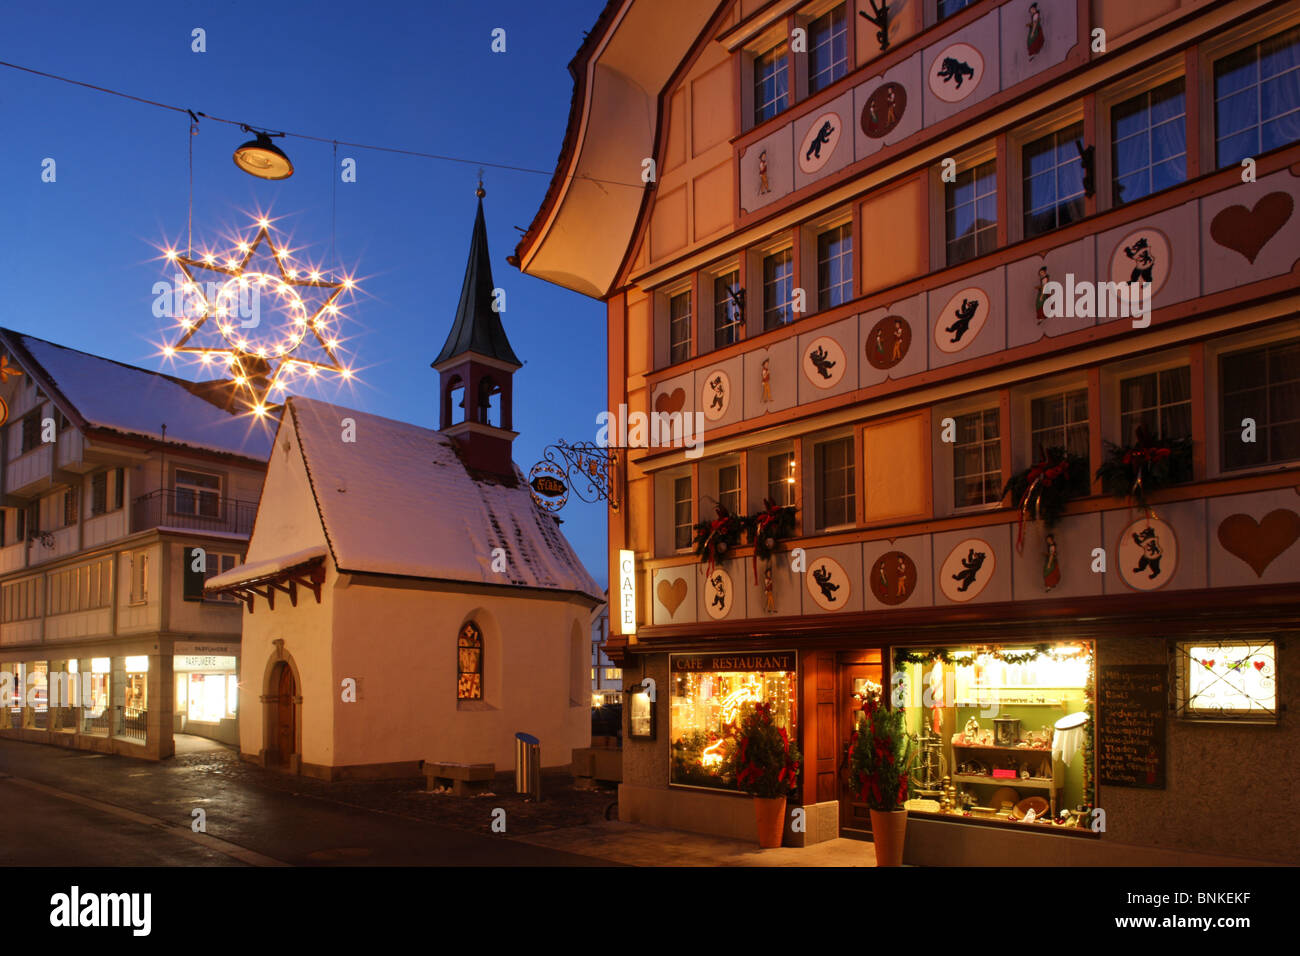 Schweiz-Appenzell Dorf platzieren Weihnachten Beleuchtung Stern Advent  Kanton Appenzell Innerrhoden Appenzellerland in der Nacht Stockfotografie -  Alamy